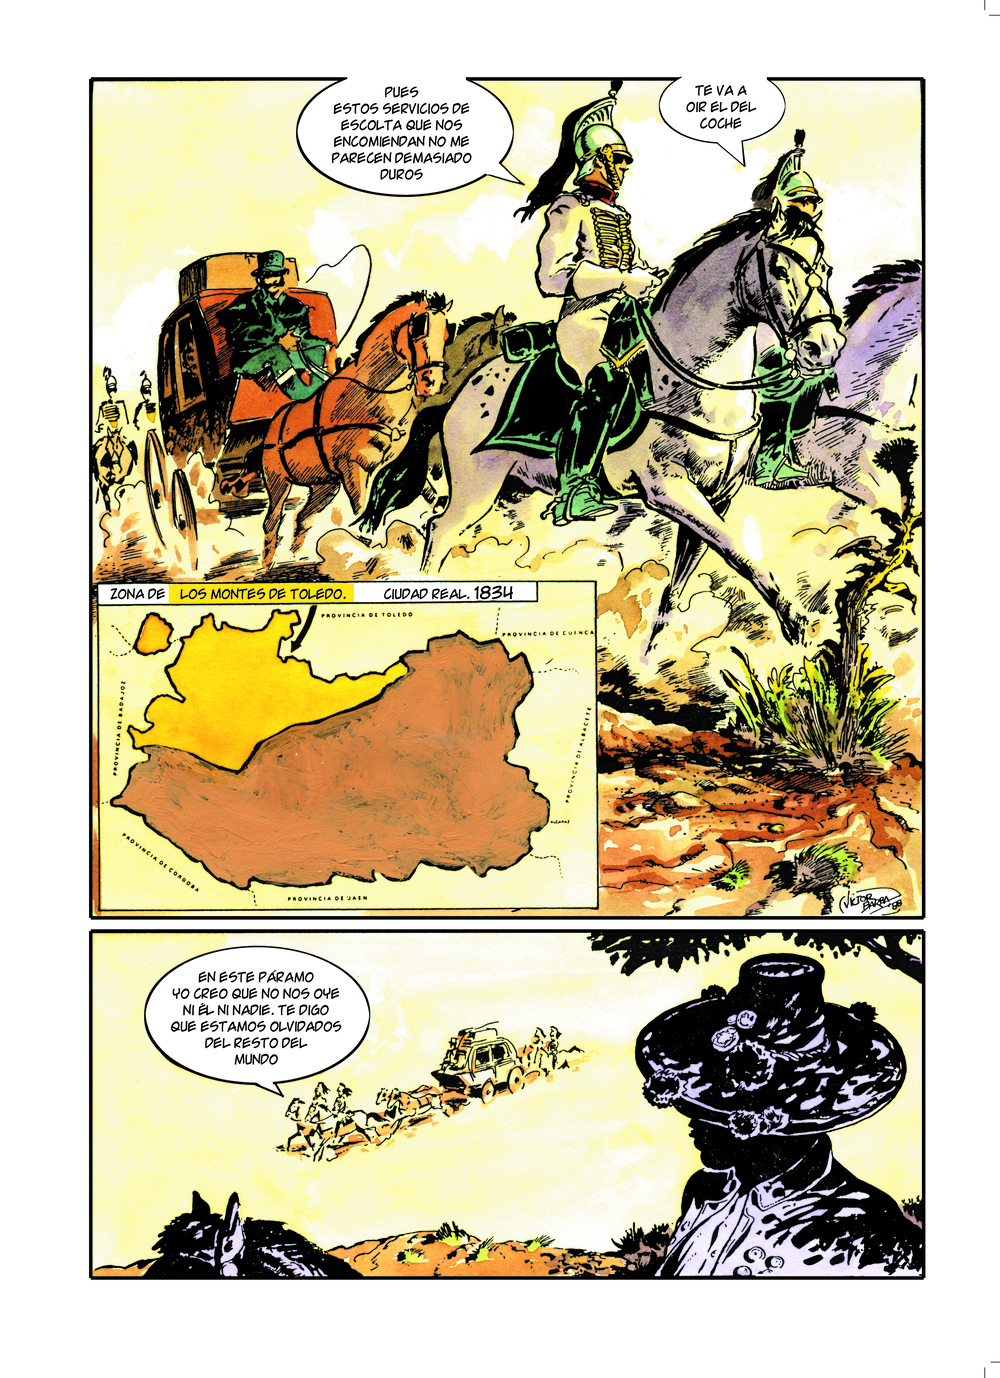 Un historia de Ciudad Real en cómic como el Guadiana